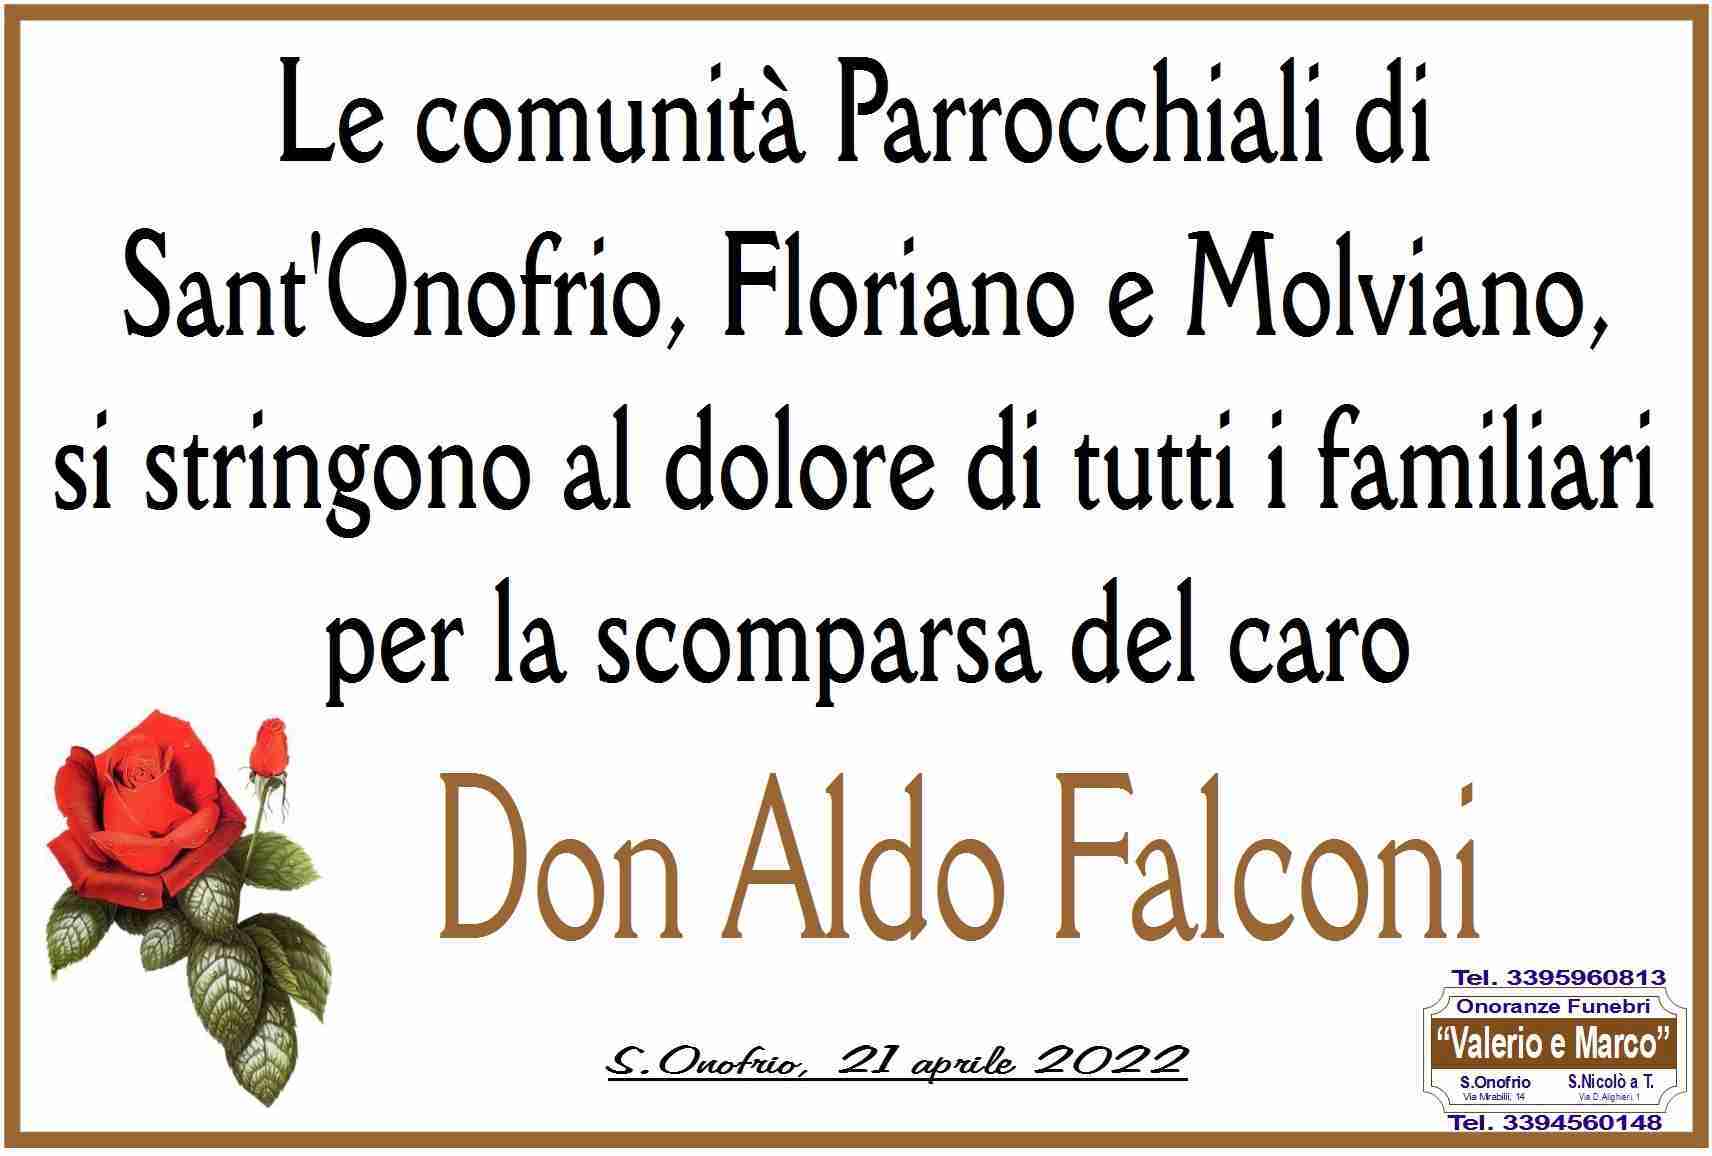 Don Aldo Falconi